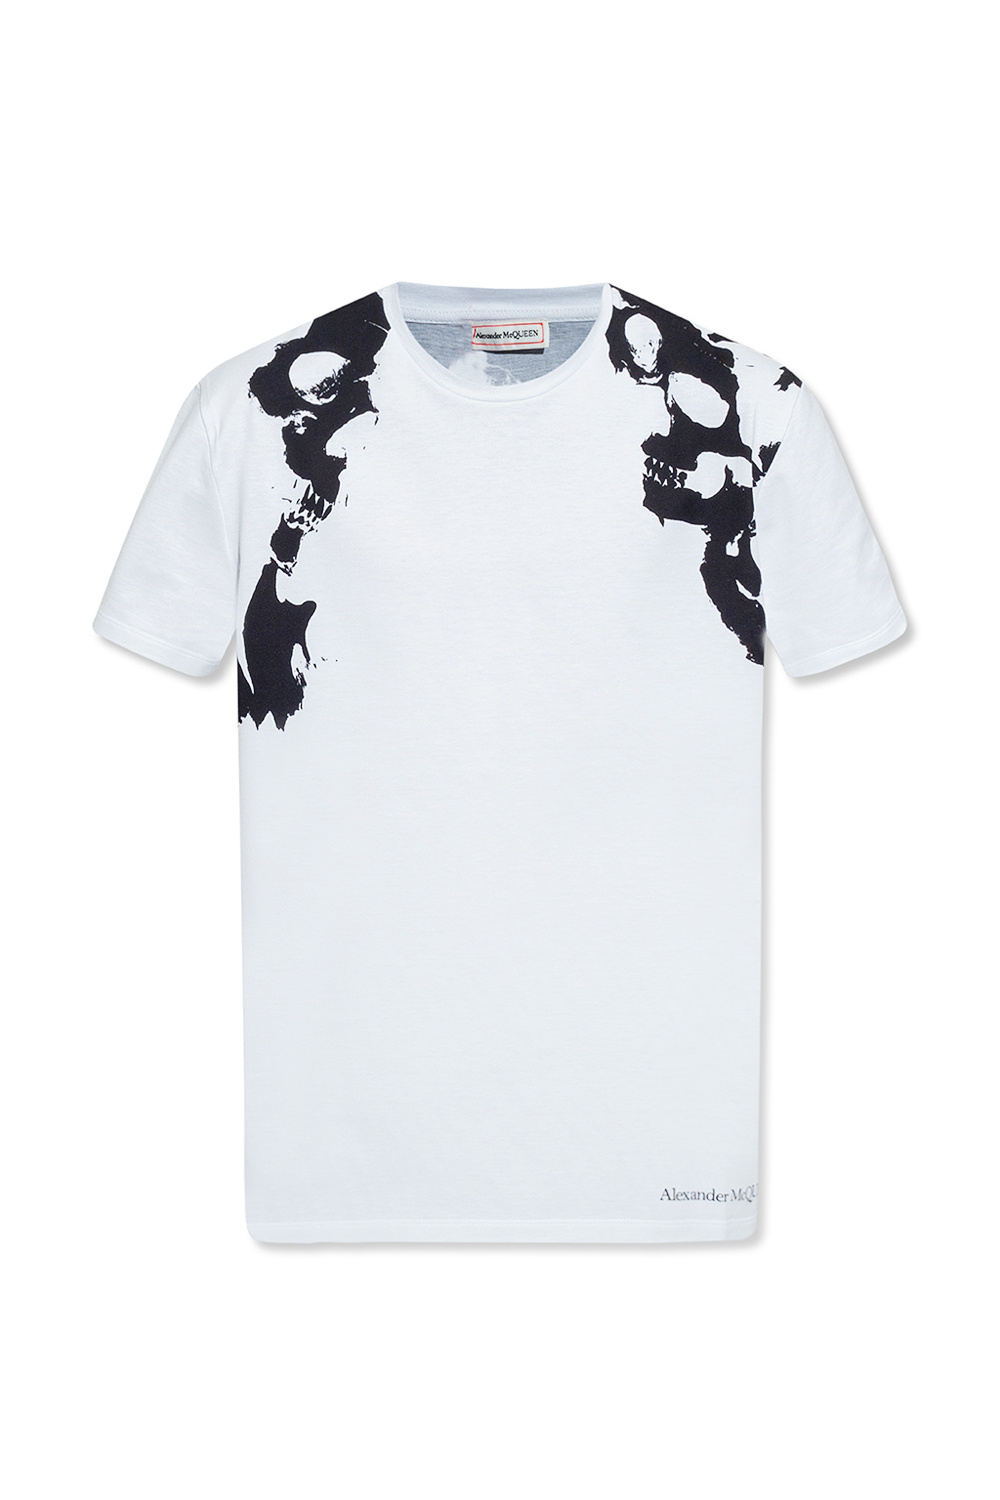 shirt | Alexander McQueen Printed T - IetpShops - alexander 